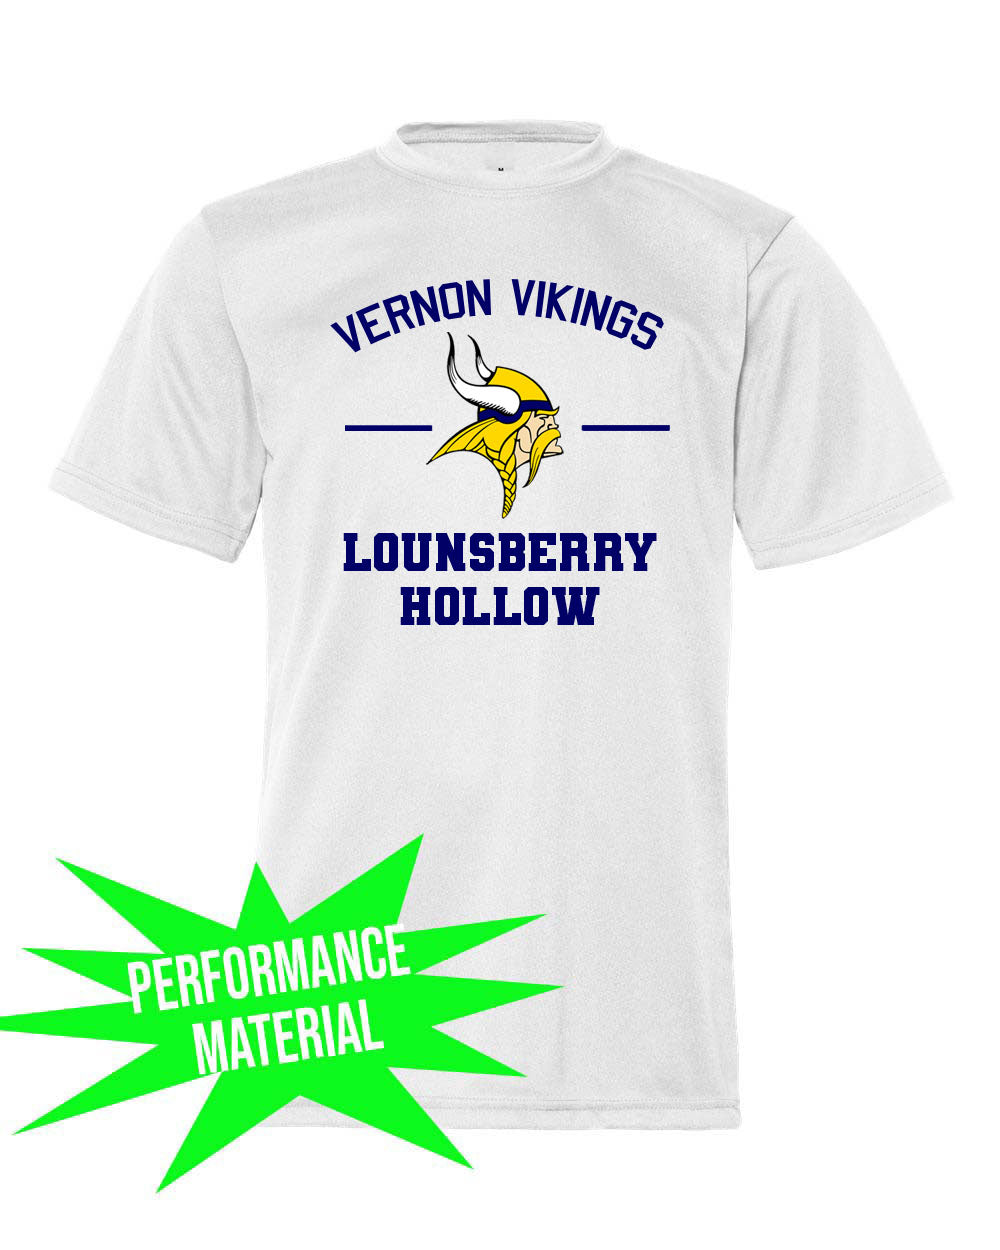 Lounsberry Hollow Performance Material T-Shirt  Design 2